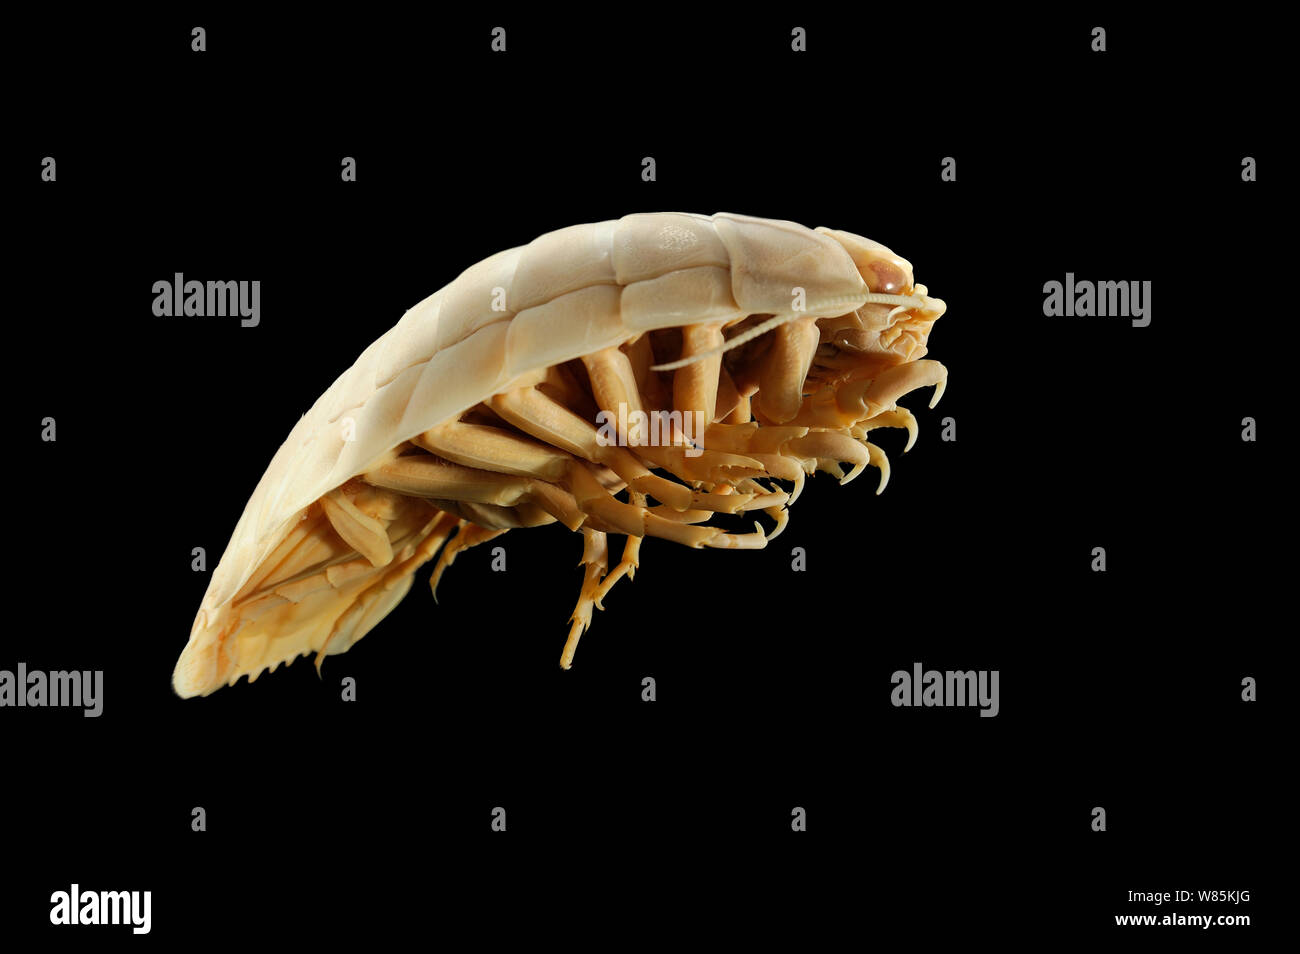 Deepsea isopod gigante (Bathynomus giganteus), juvenil ejemplar, desde el Golfo de Aden, el Mar Arábigo, el Océano Índico, a una profundidad de 1318m. Foto de stock